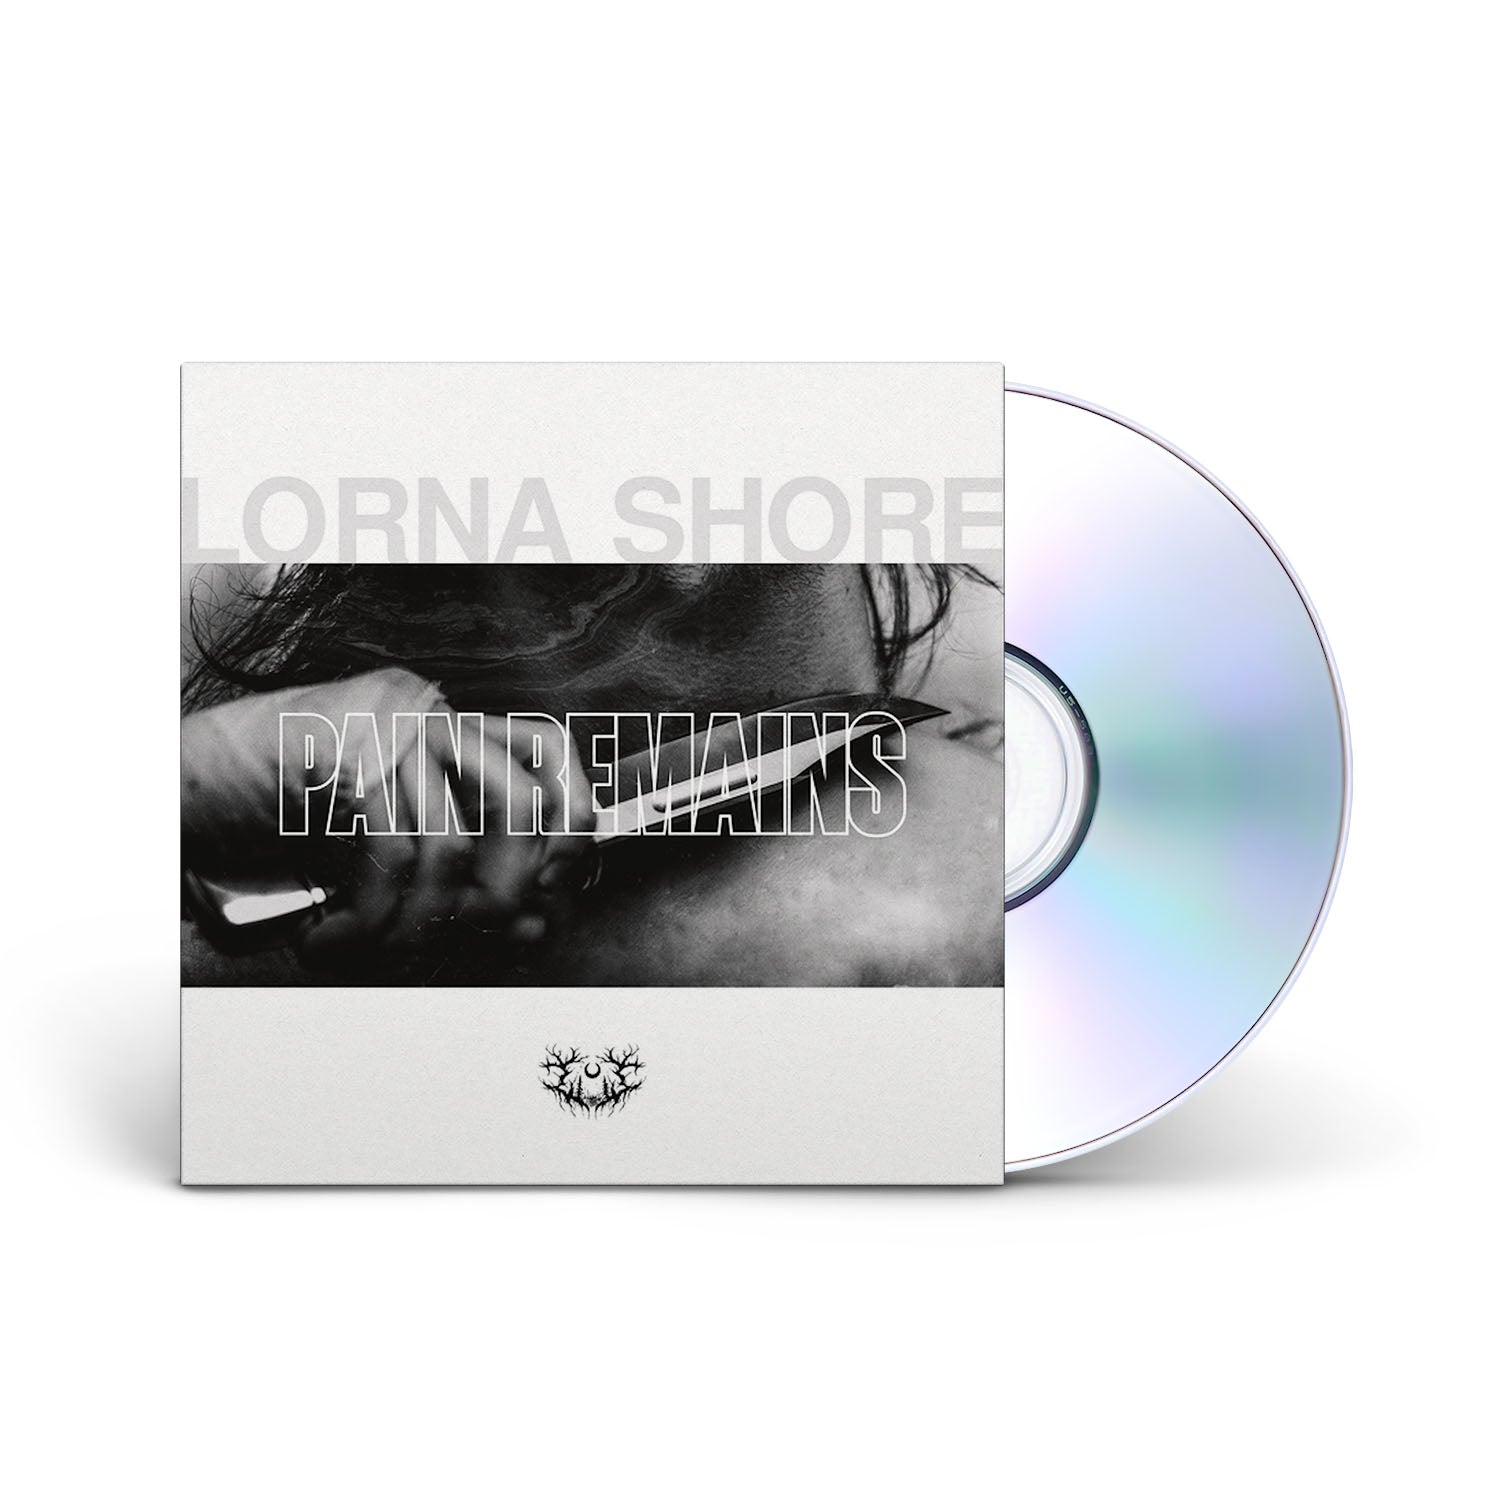 LORNA SHORE - Pain Remains - CD